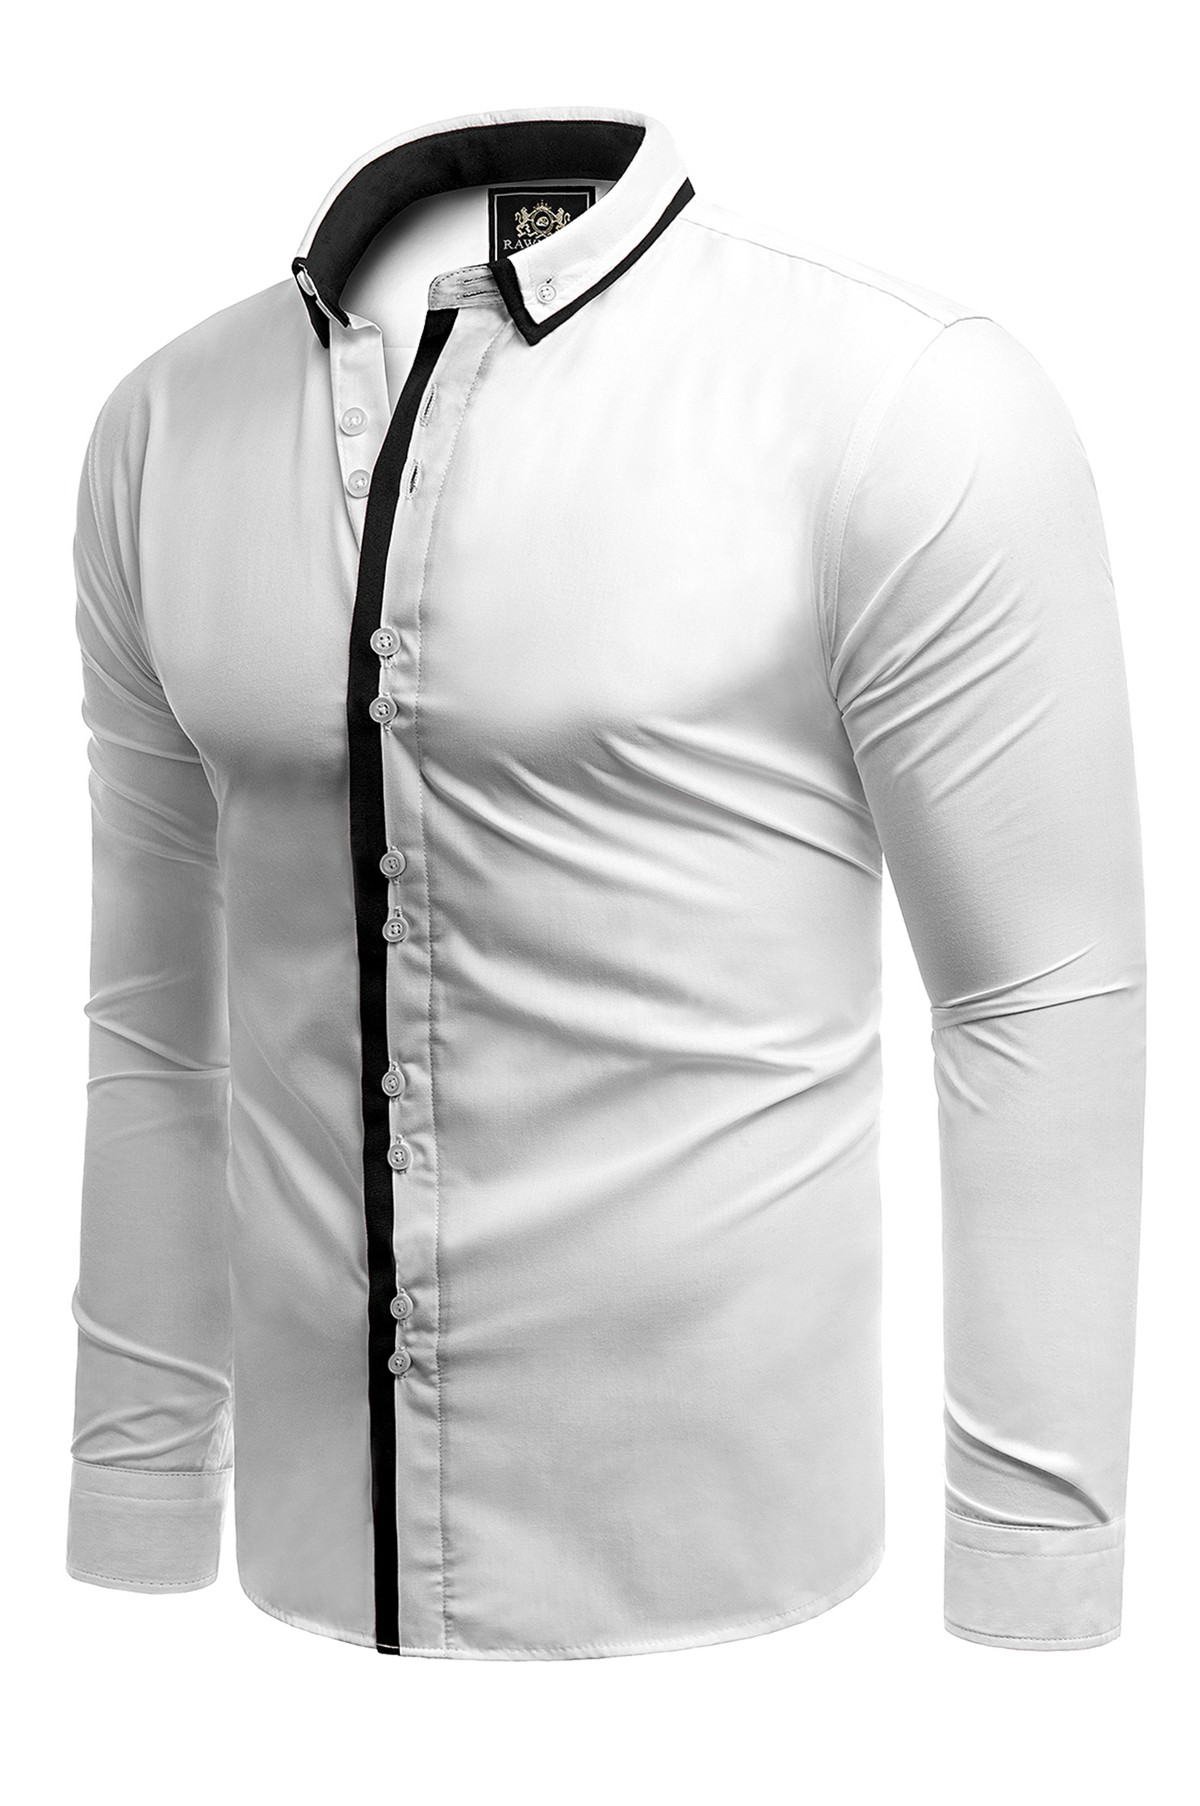 Koszula męska długi rękaw rl19 - biały